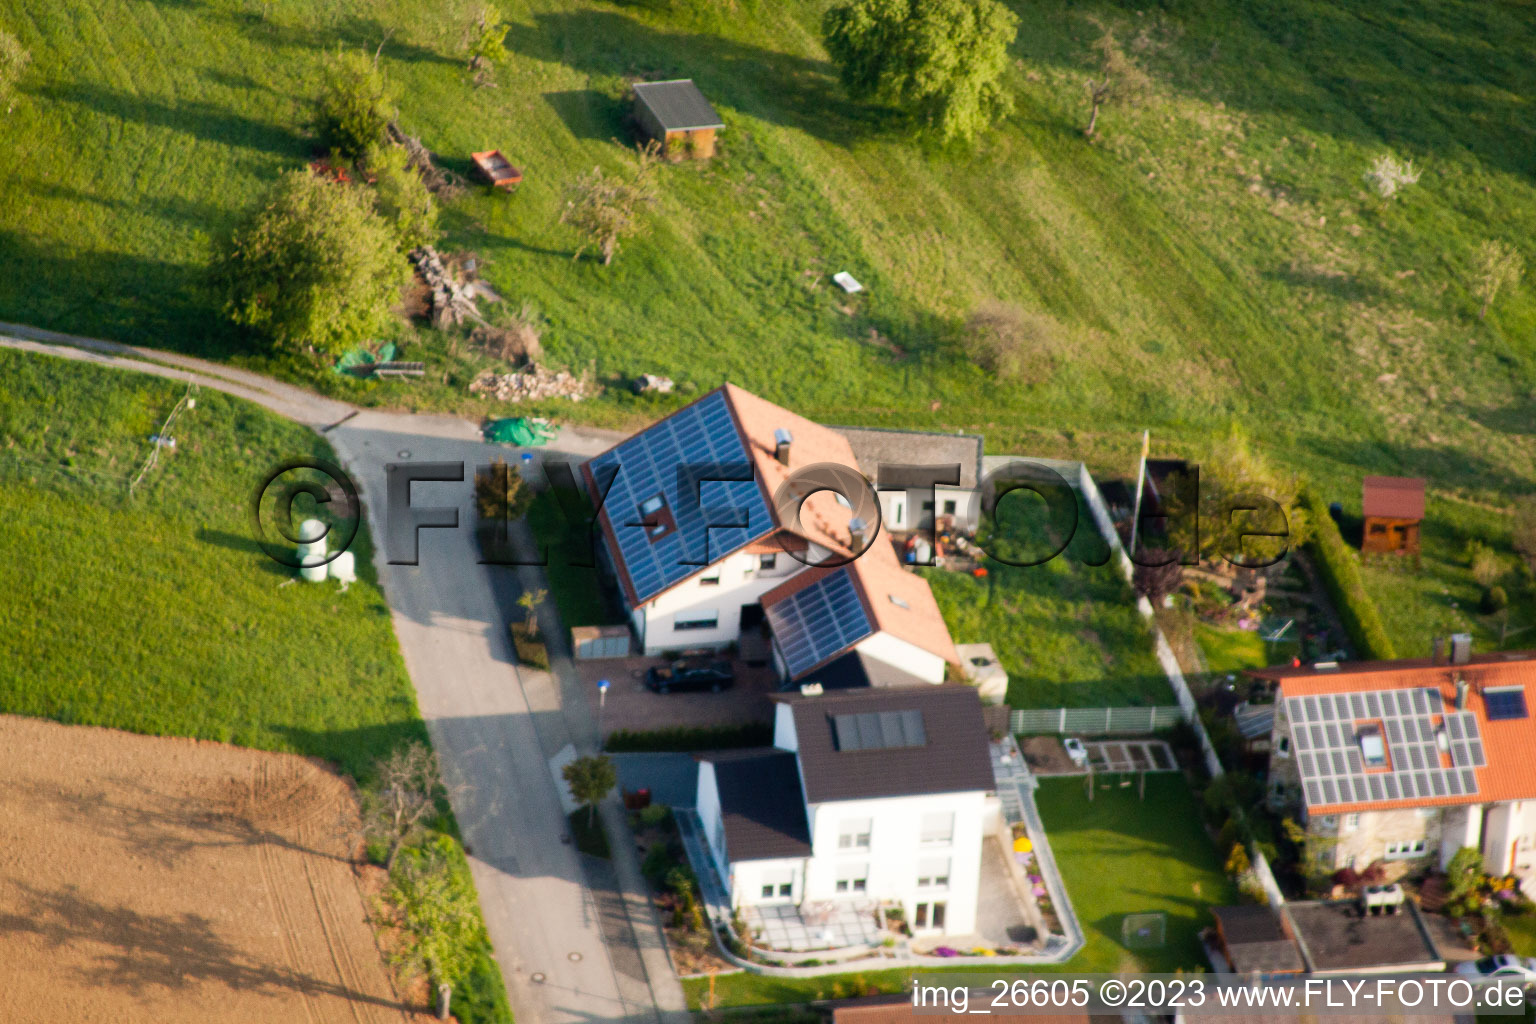 Quartier Stupferich in Karlsruhe dans le département Bade-Wurtemberg, Allemagne vu d'un drone